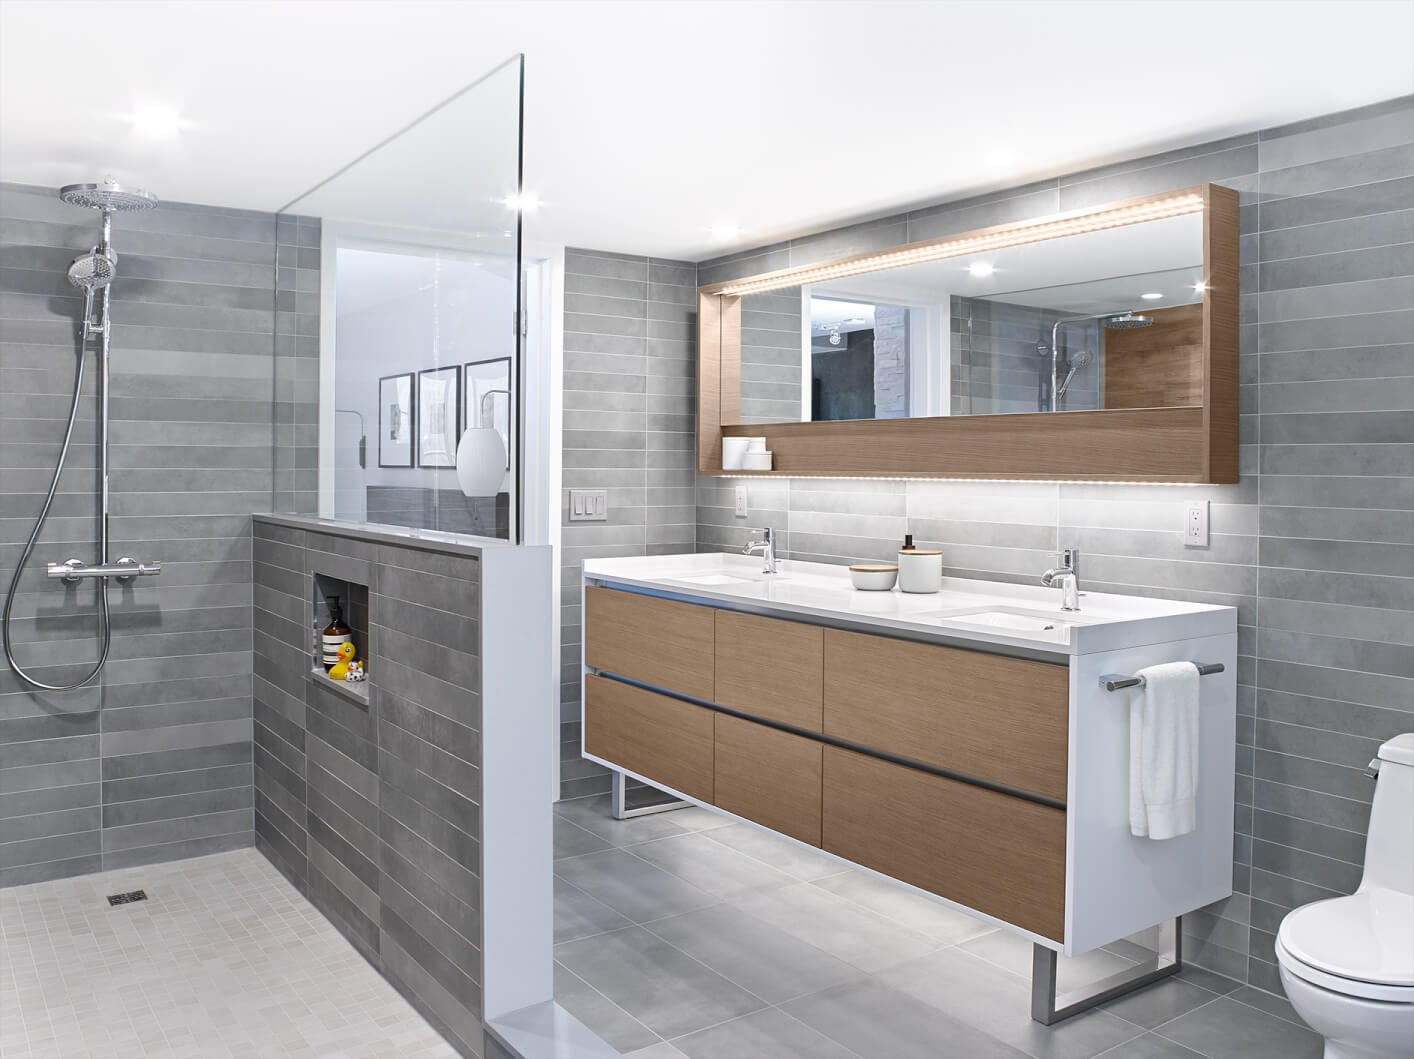 binns kitchen bath design toronto on